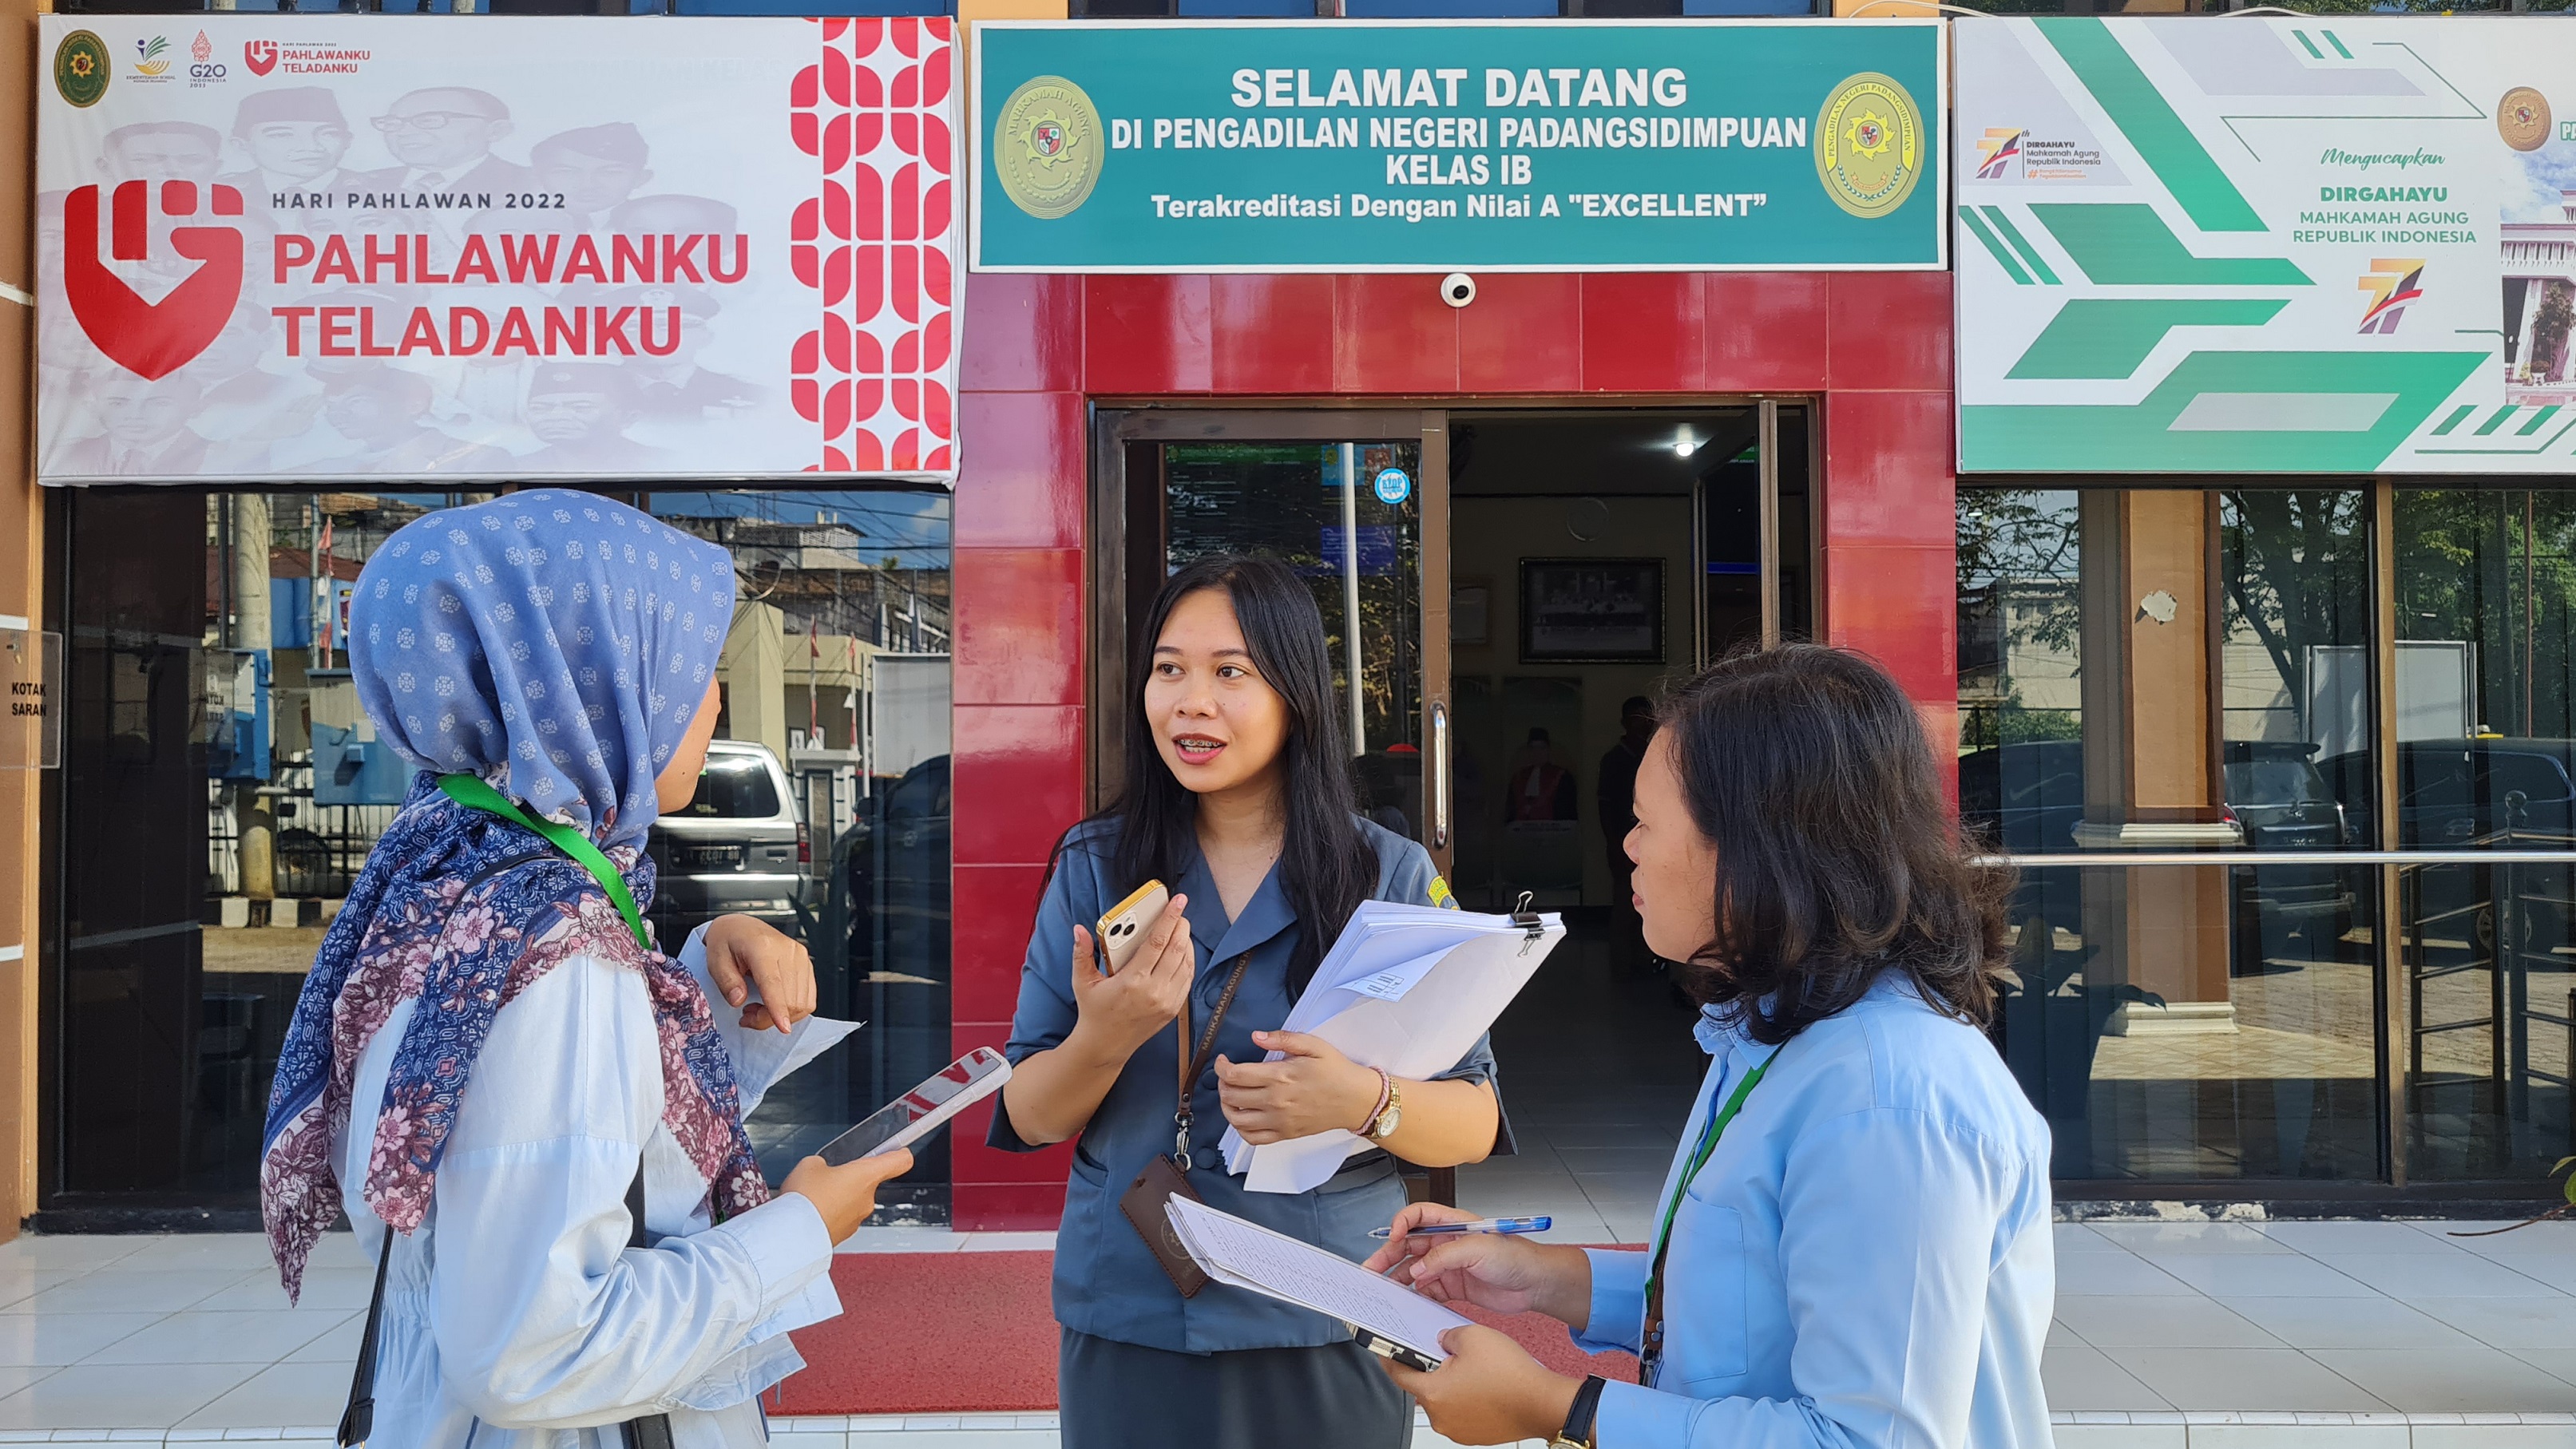 "Evaluasi Kinerja Barang Milik Negara di Pengadilan Negeri Kota Padangsidimpuan: Menjamin Keberlanjutan dan Efisiensi Pengelolaan"